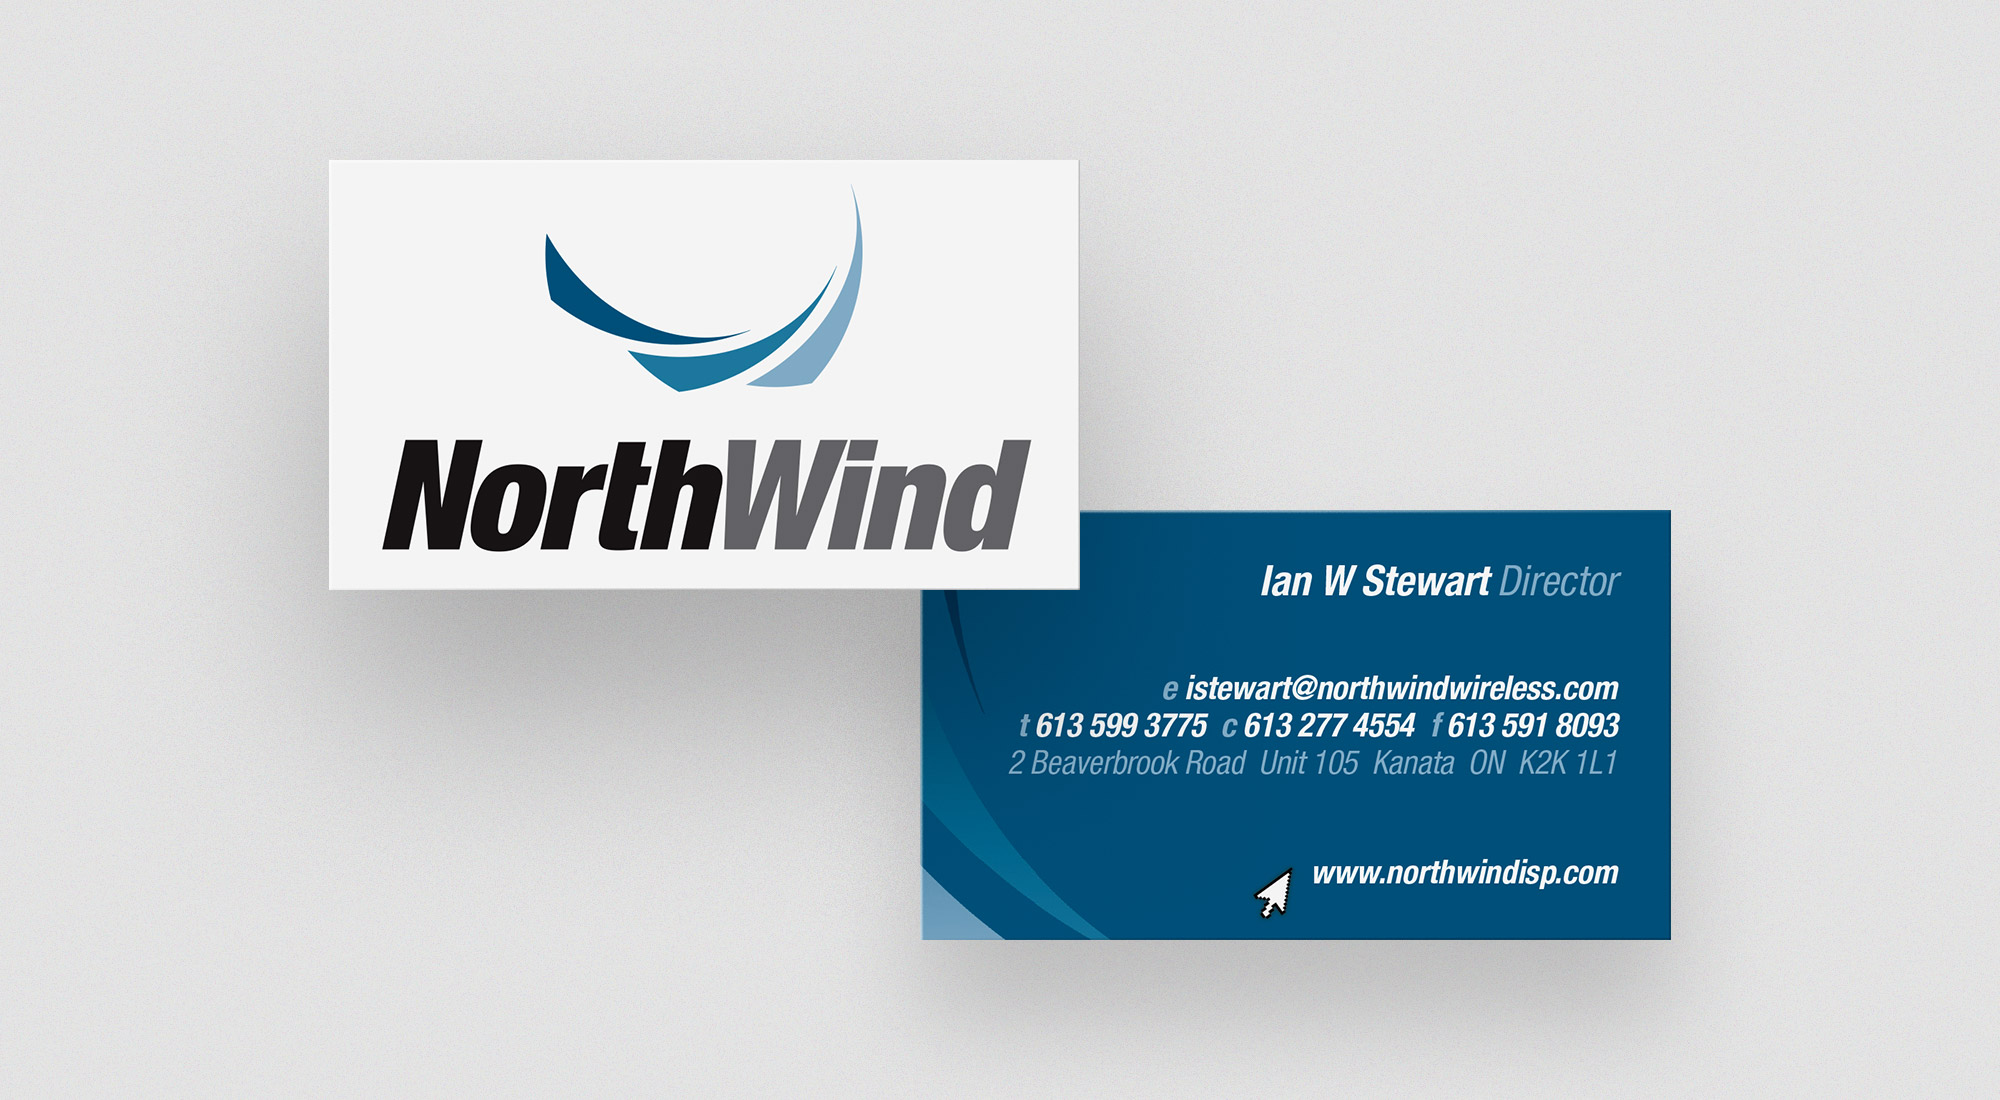 Northwind Wireless Website